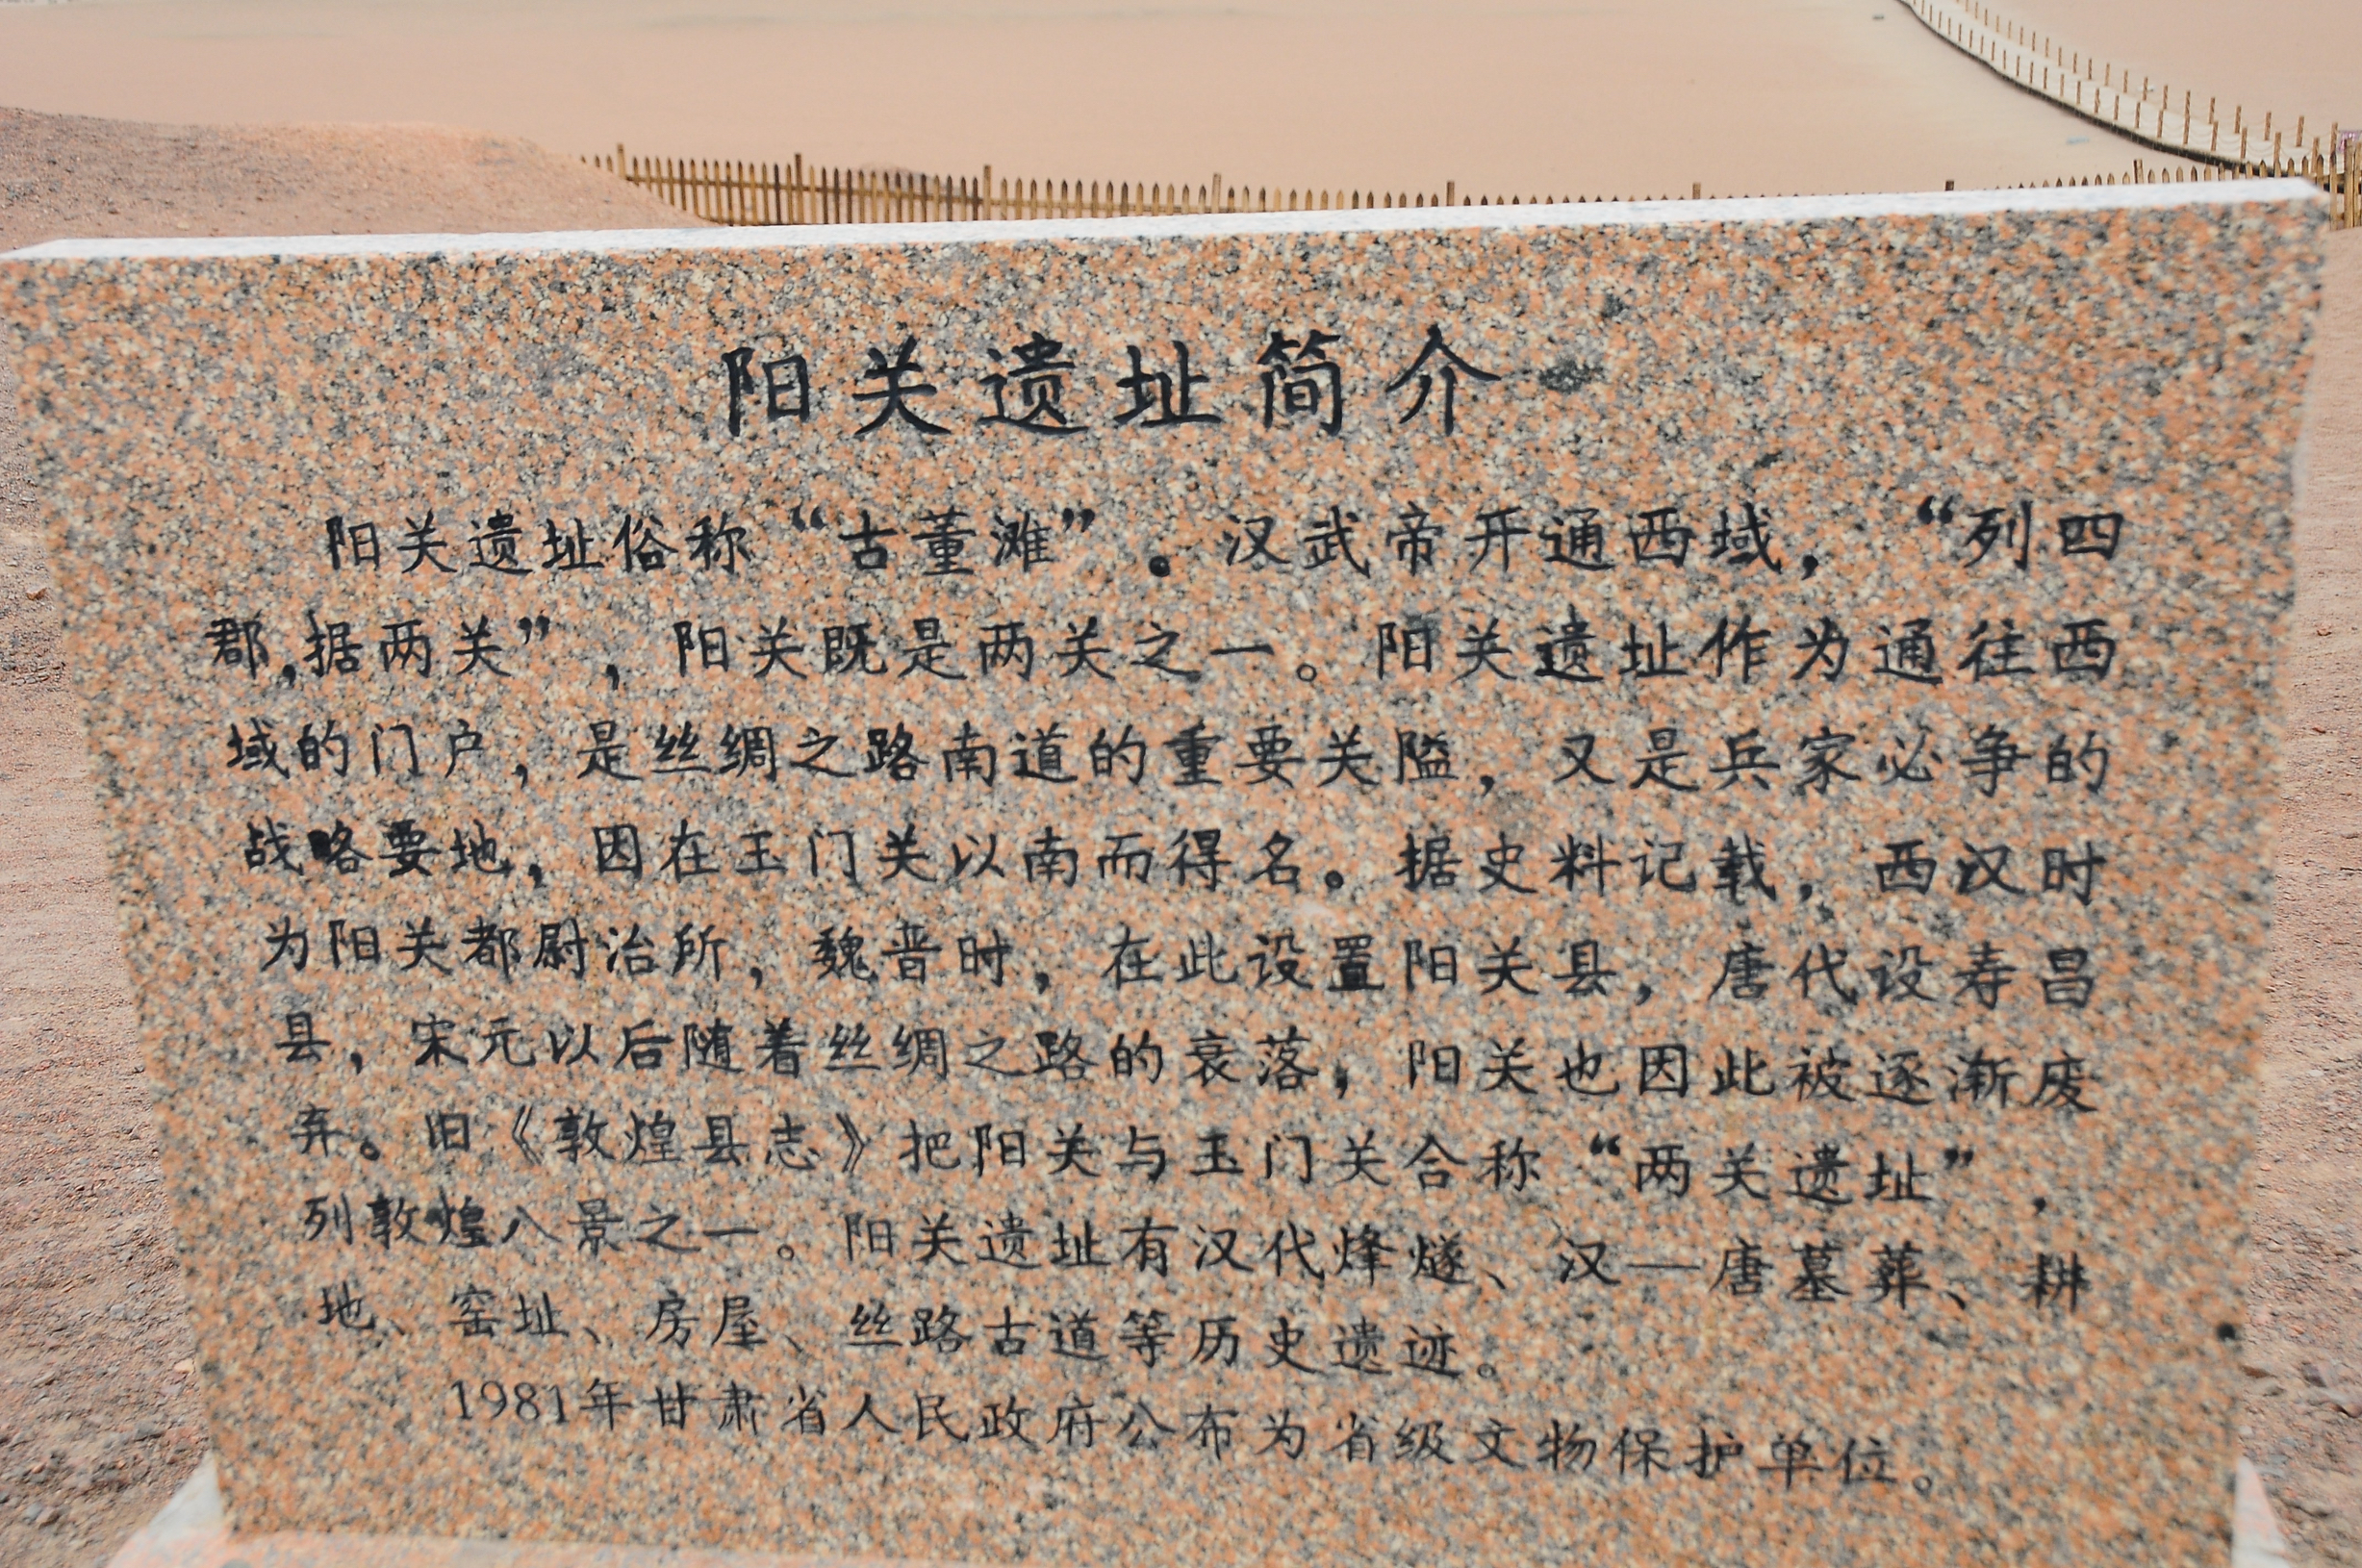 阳关，位于甘肃省敦煌市西南70千米的古董滩。与玉门关同为当时对西域的门户，丝绸之路南路必经的关隘。戈